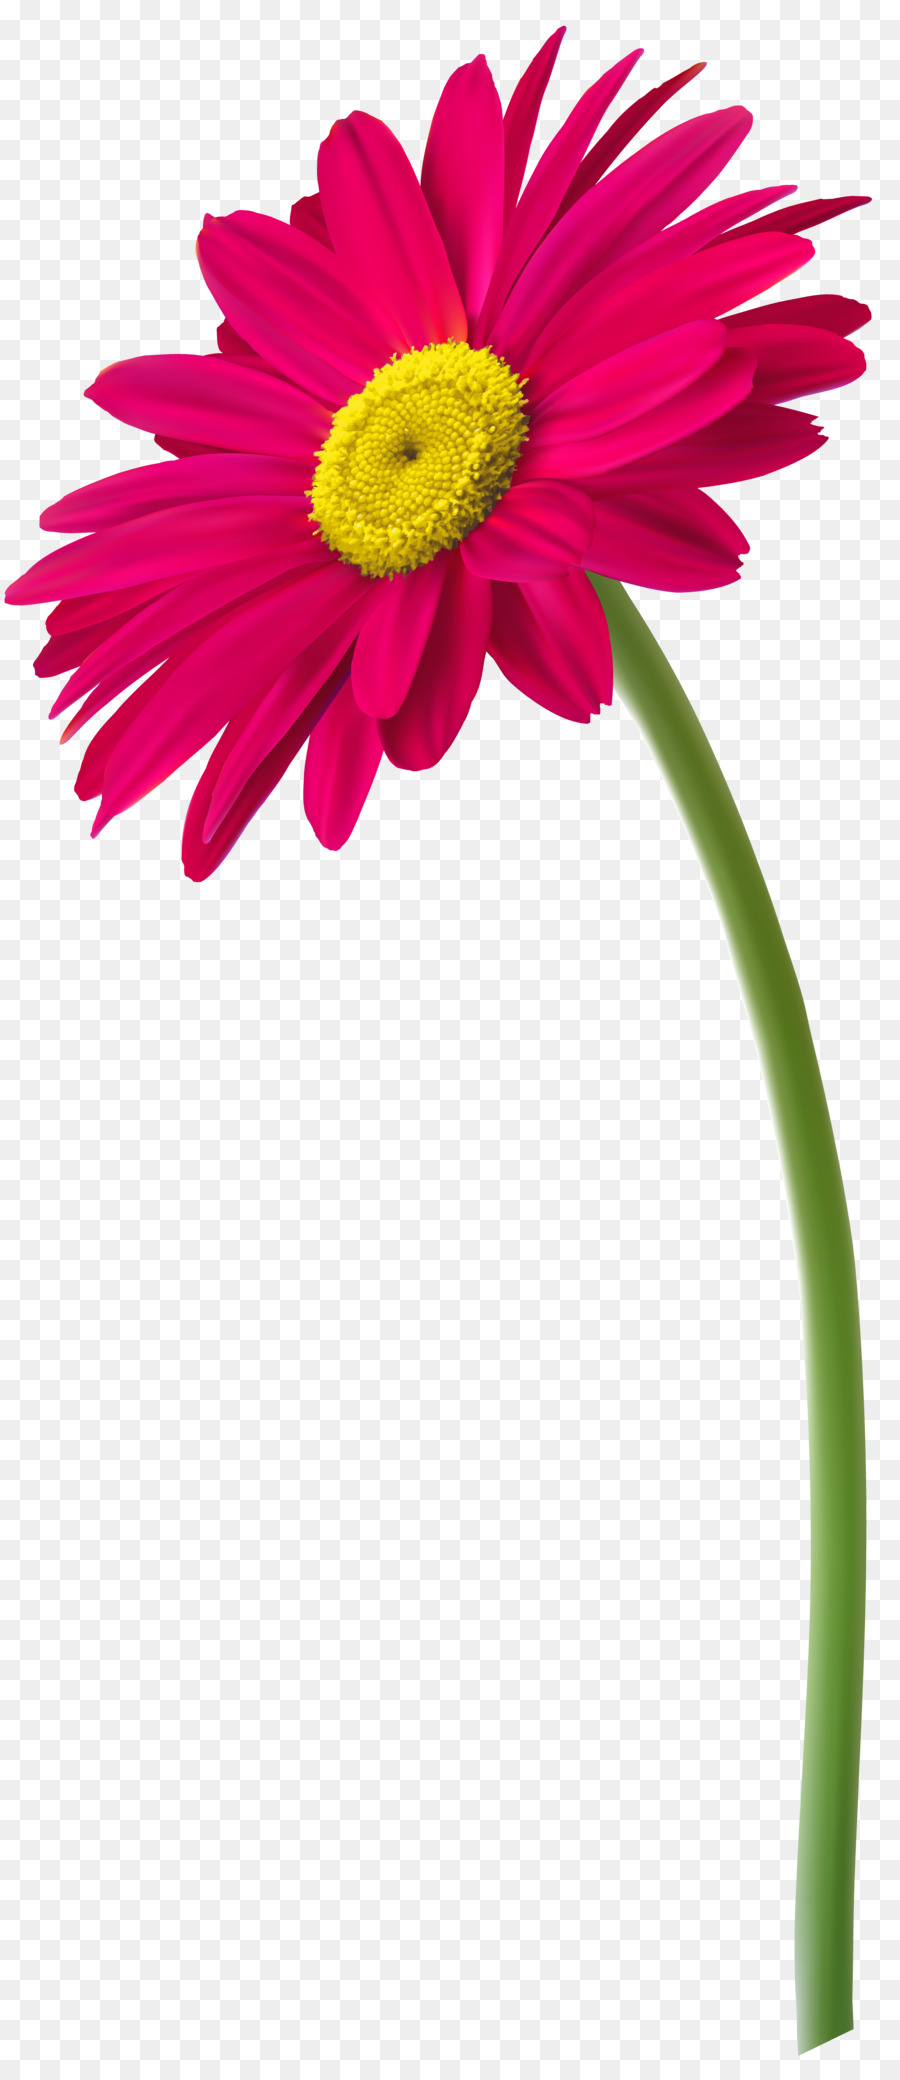 Clip art Flowerpot Vase Image - flower png download - 3981*9124 - Free Transparent Flower png Download.